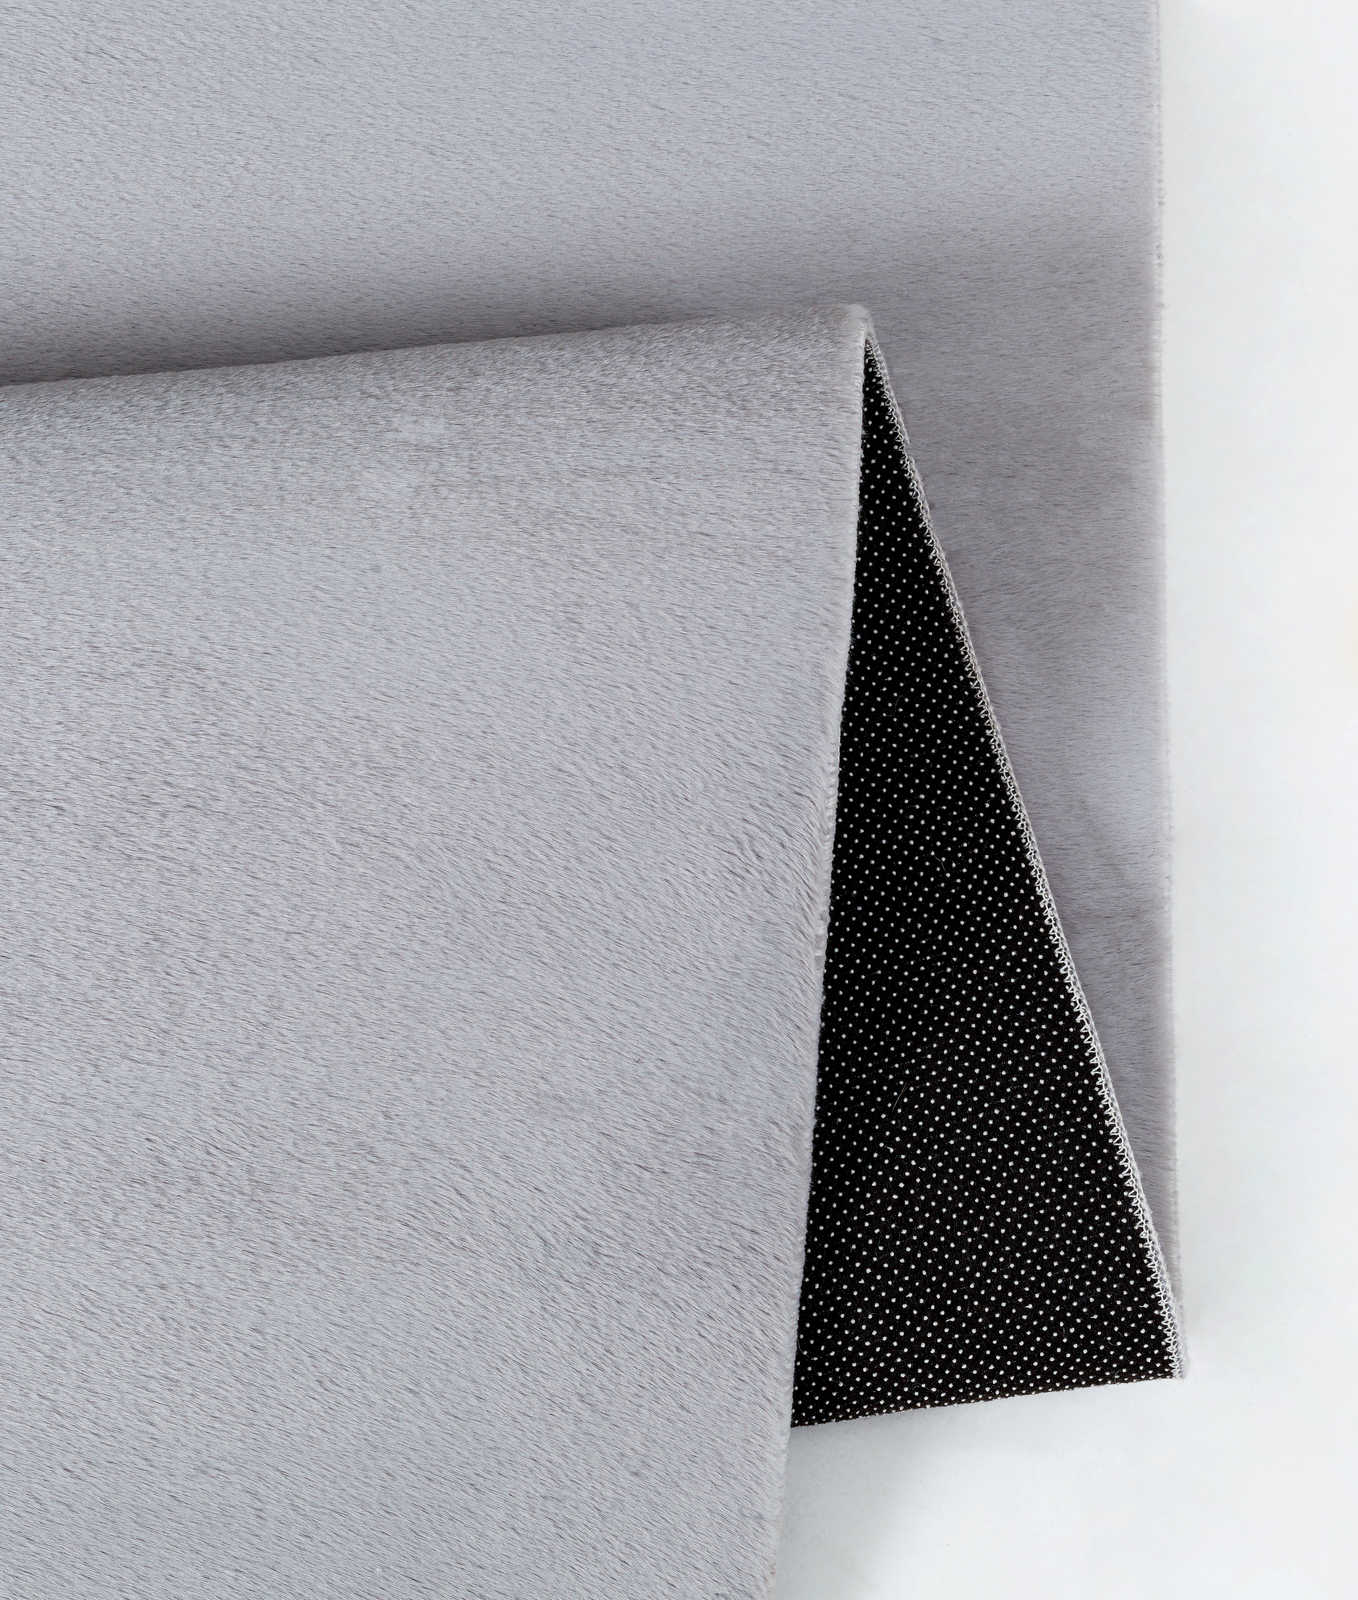             Angenehmer Hochflor Teppich in sanften Grau – 100 x 50 cm
        